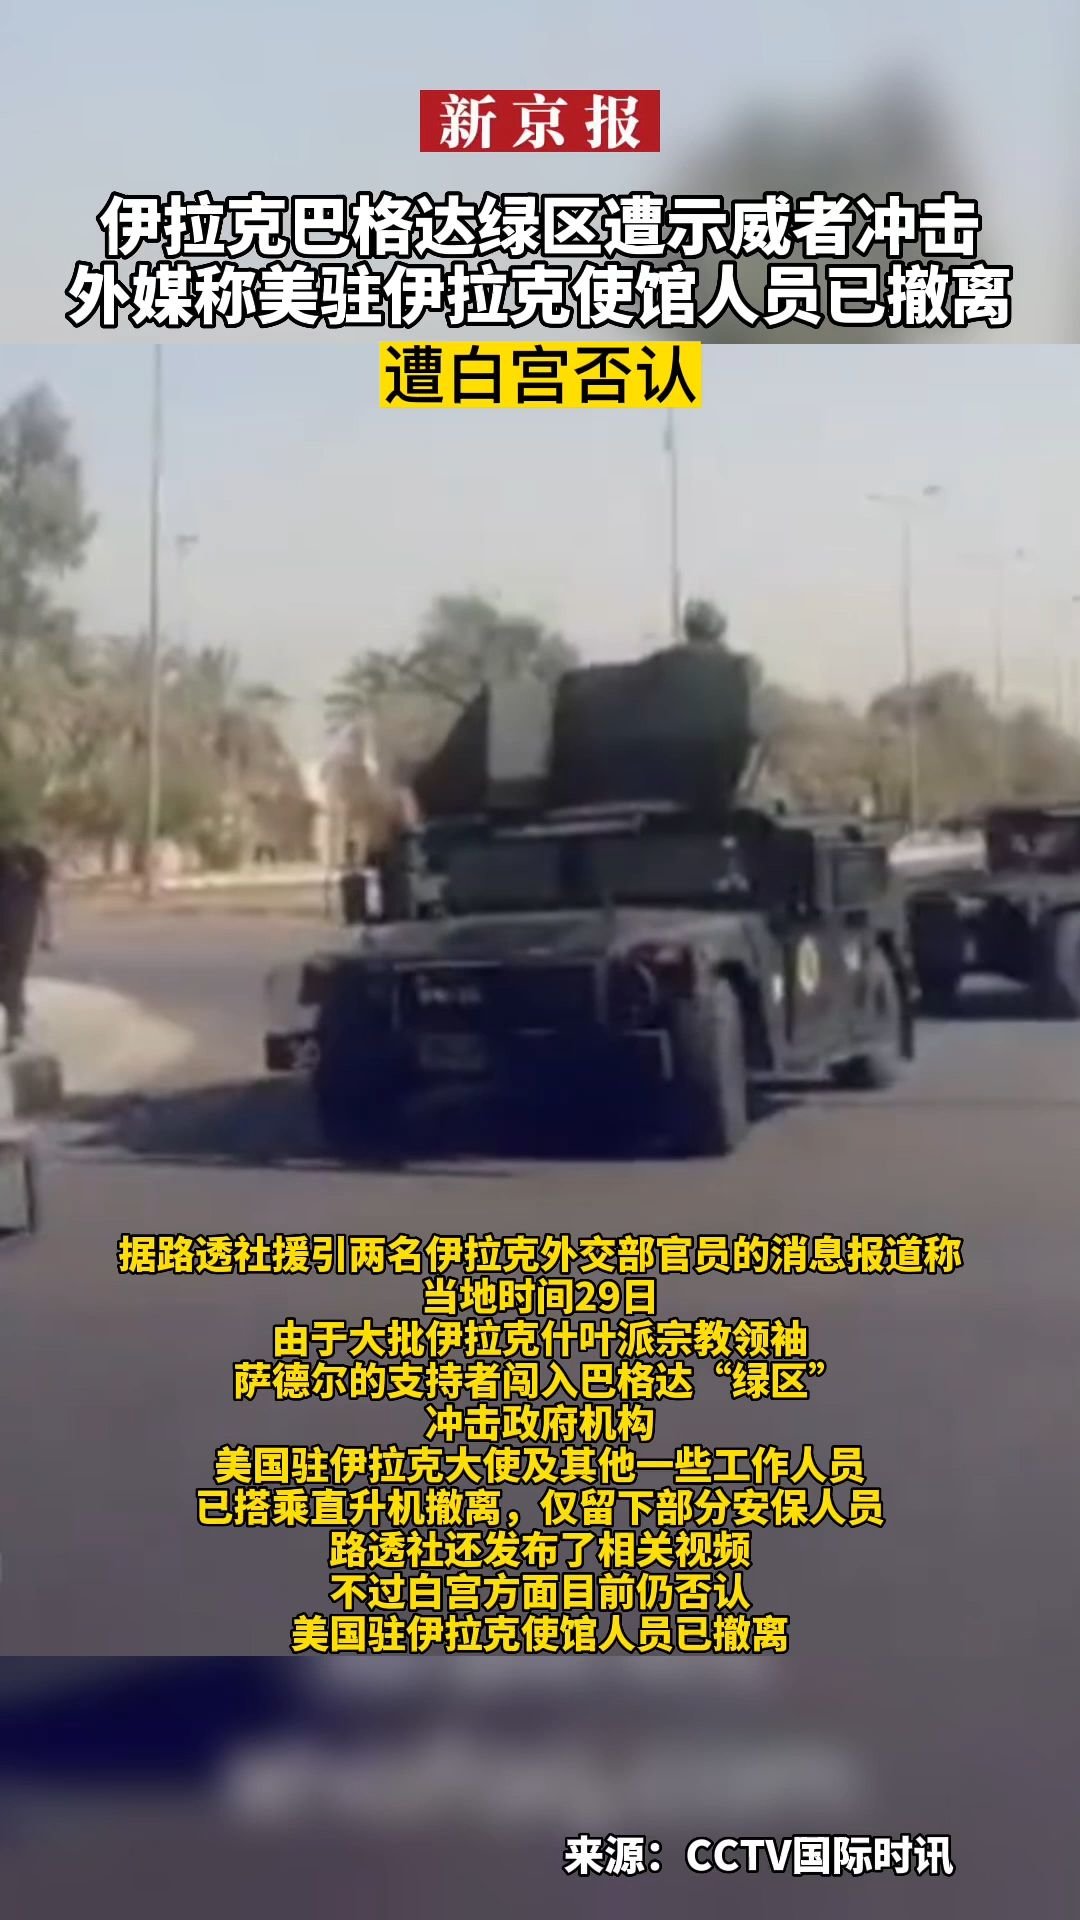 美国驻伊拉克大使馆附近遭火箭弹袭击_北京时间